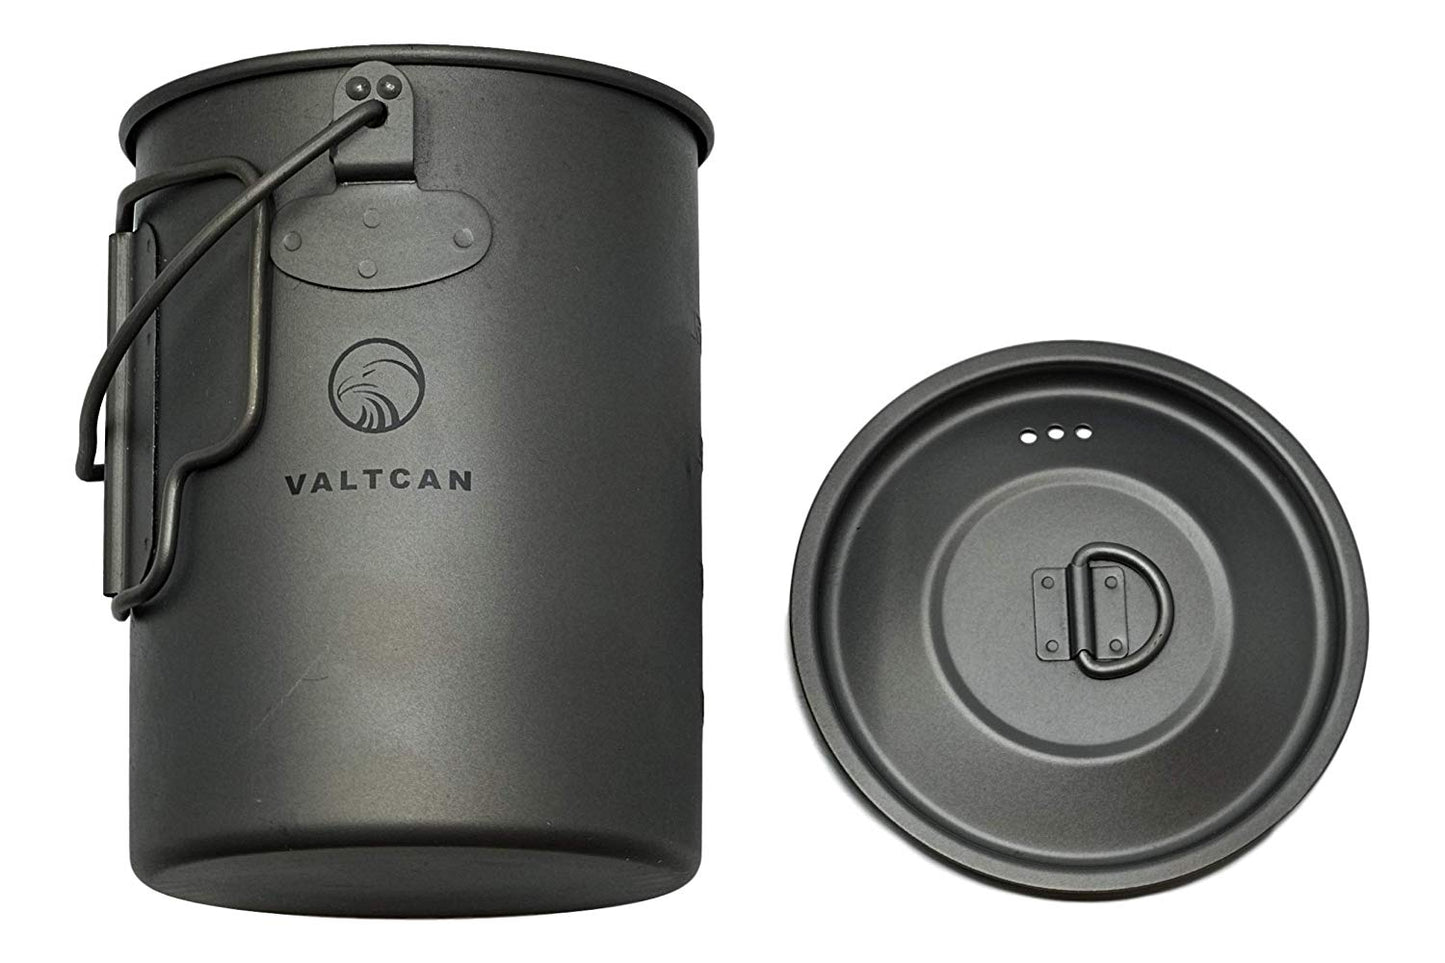 Valtcan 900 ml Titan-Topfbecher 34 fl oz Kaffeetasse mit Deckel und Packsack 134 g 